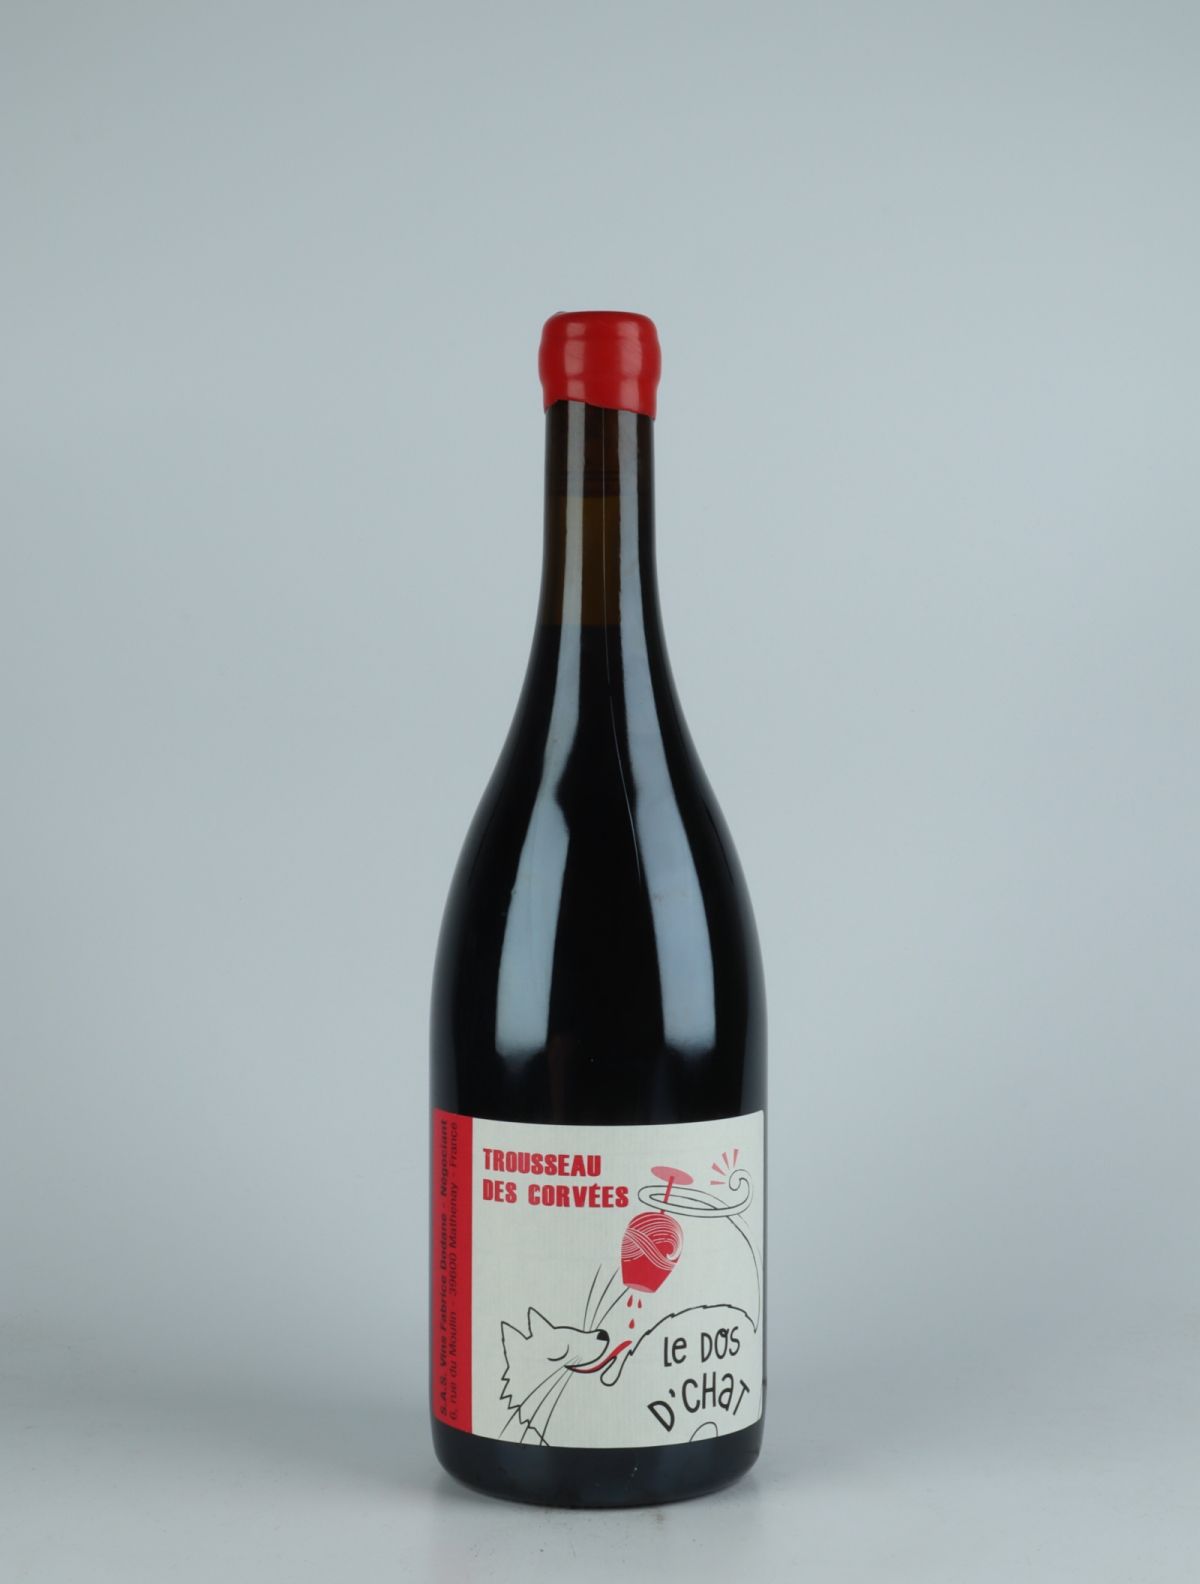 A bottle 2020 Trousseau des Corvées Red wine from Fabrice Dodane, Jura in France